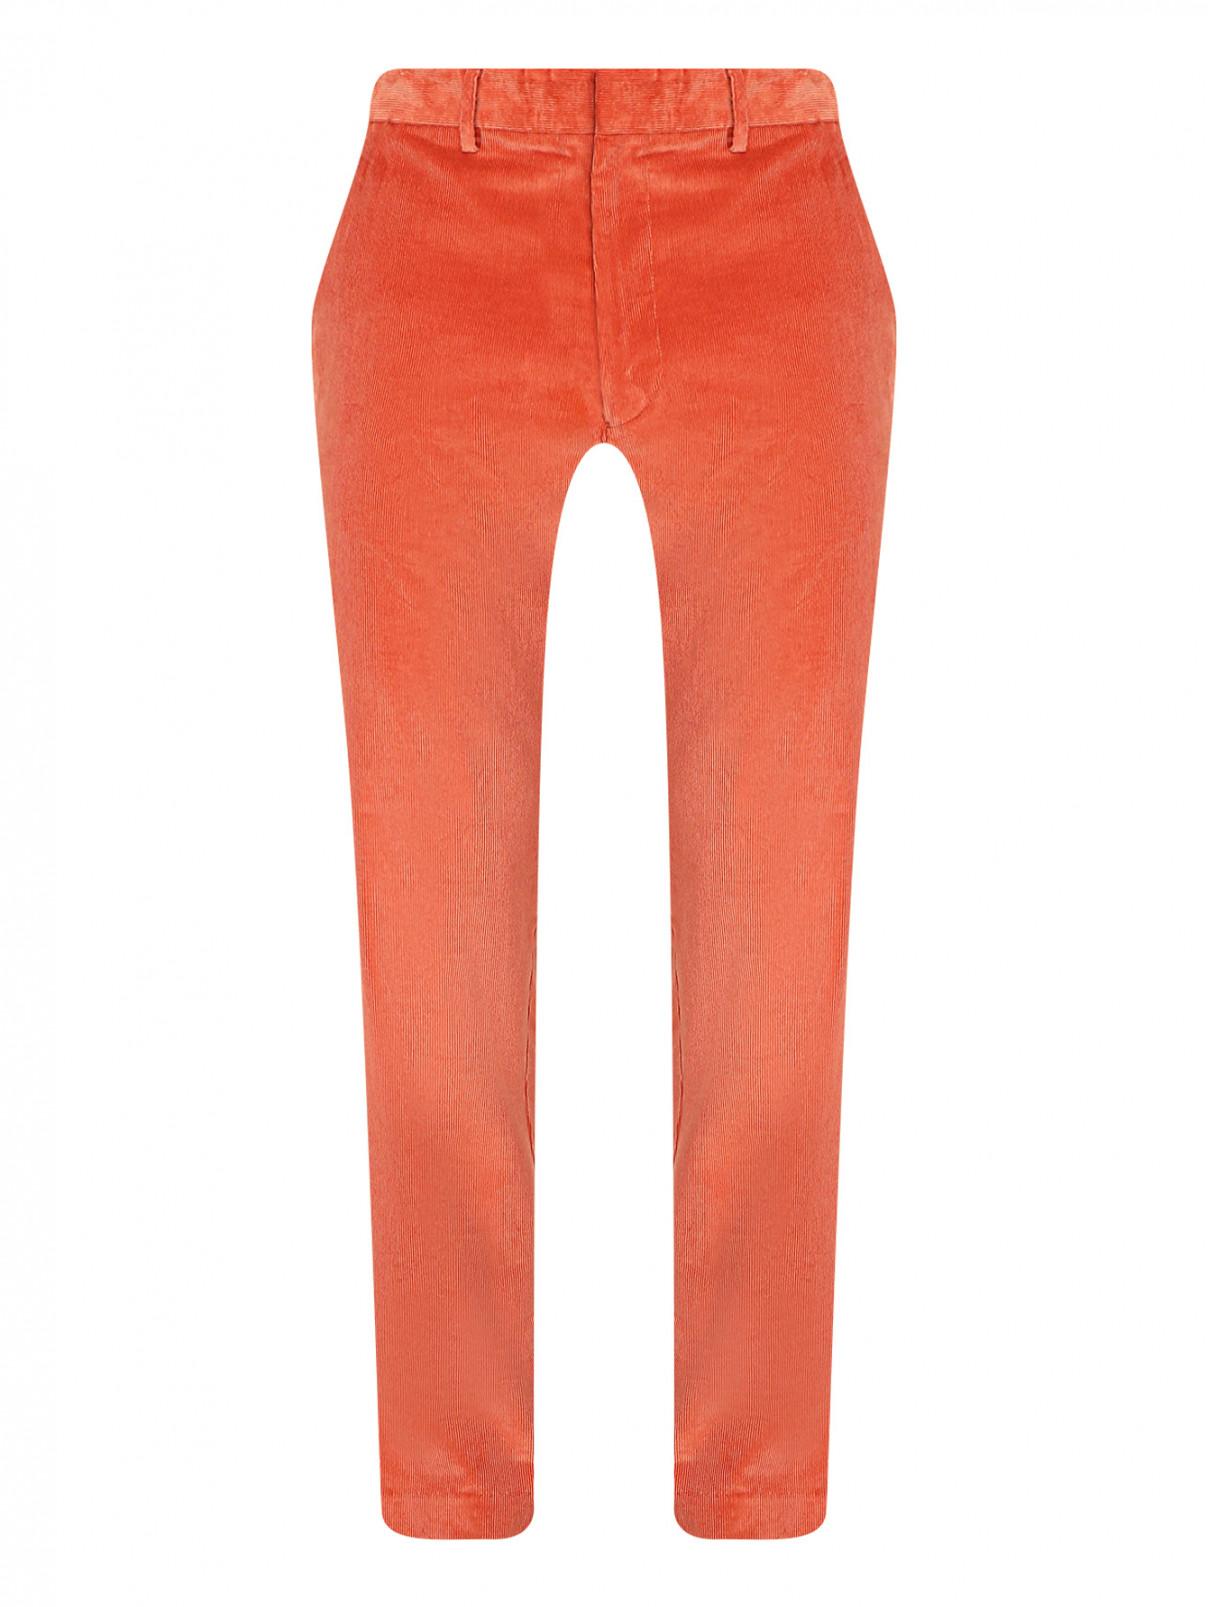 Вельветовые брюки с карманами Paul Smith  –  Общий вид  – Цвет:  Оранжевый